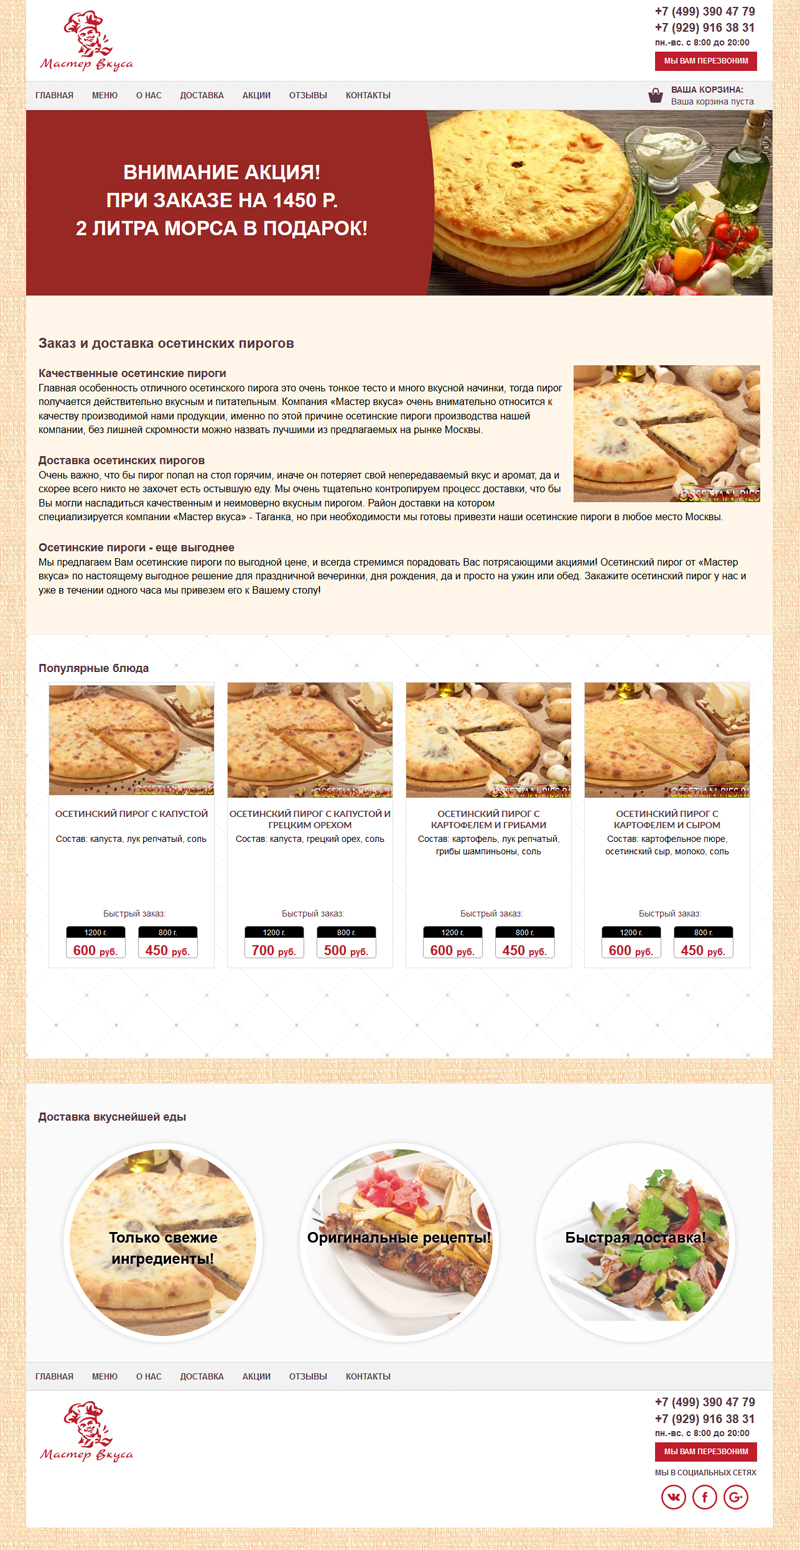 Модернизация сайта пекарни «Мастер вкуса»